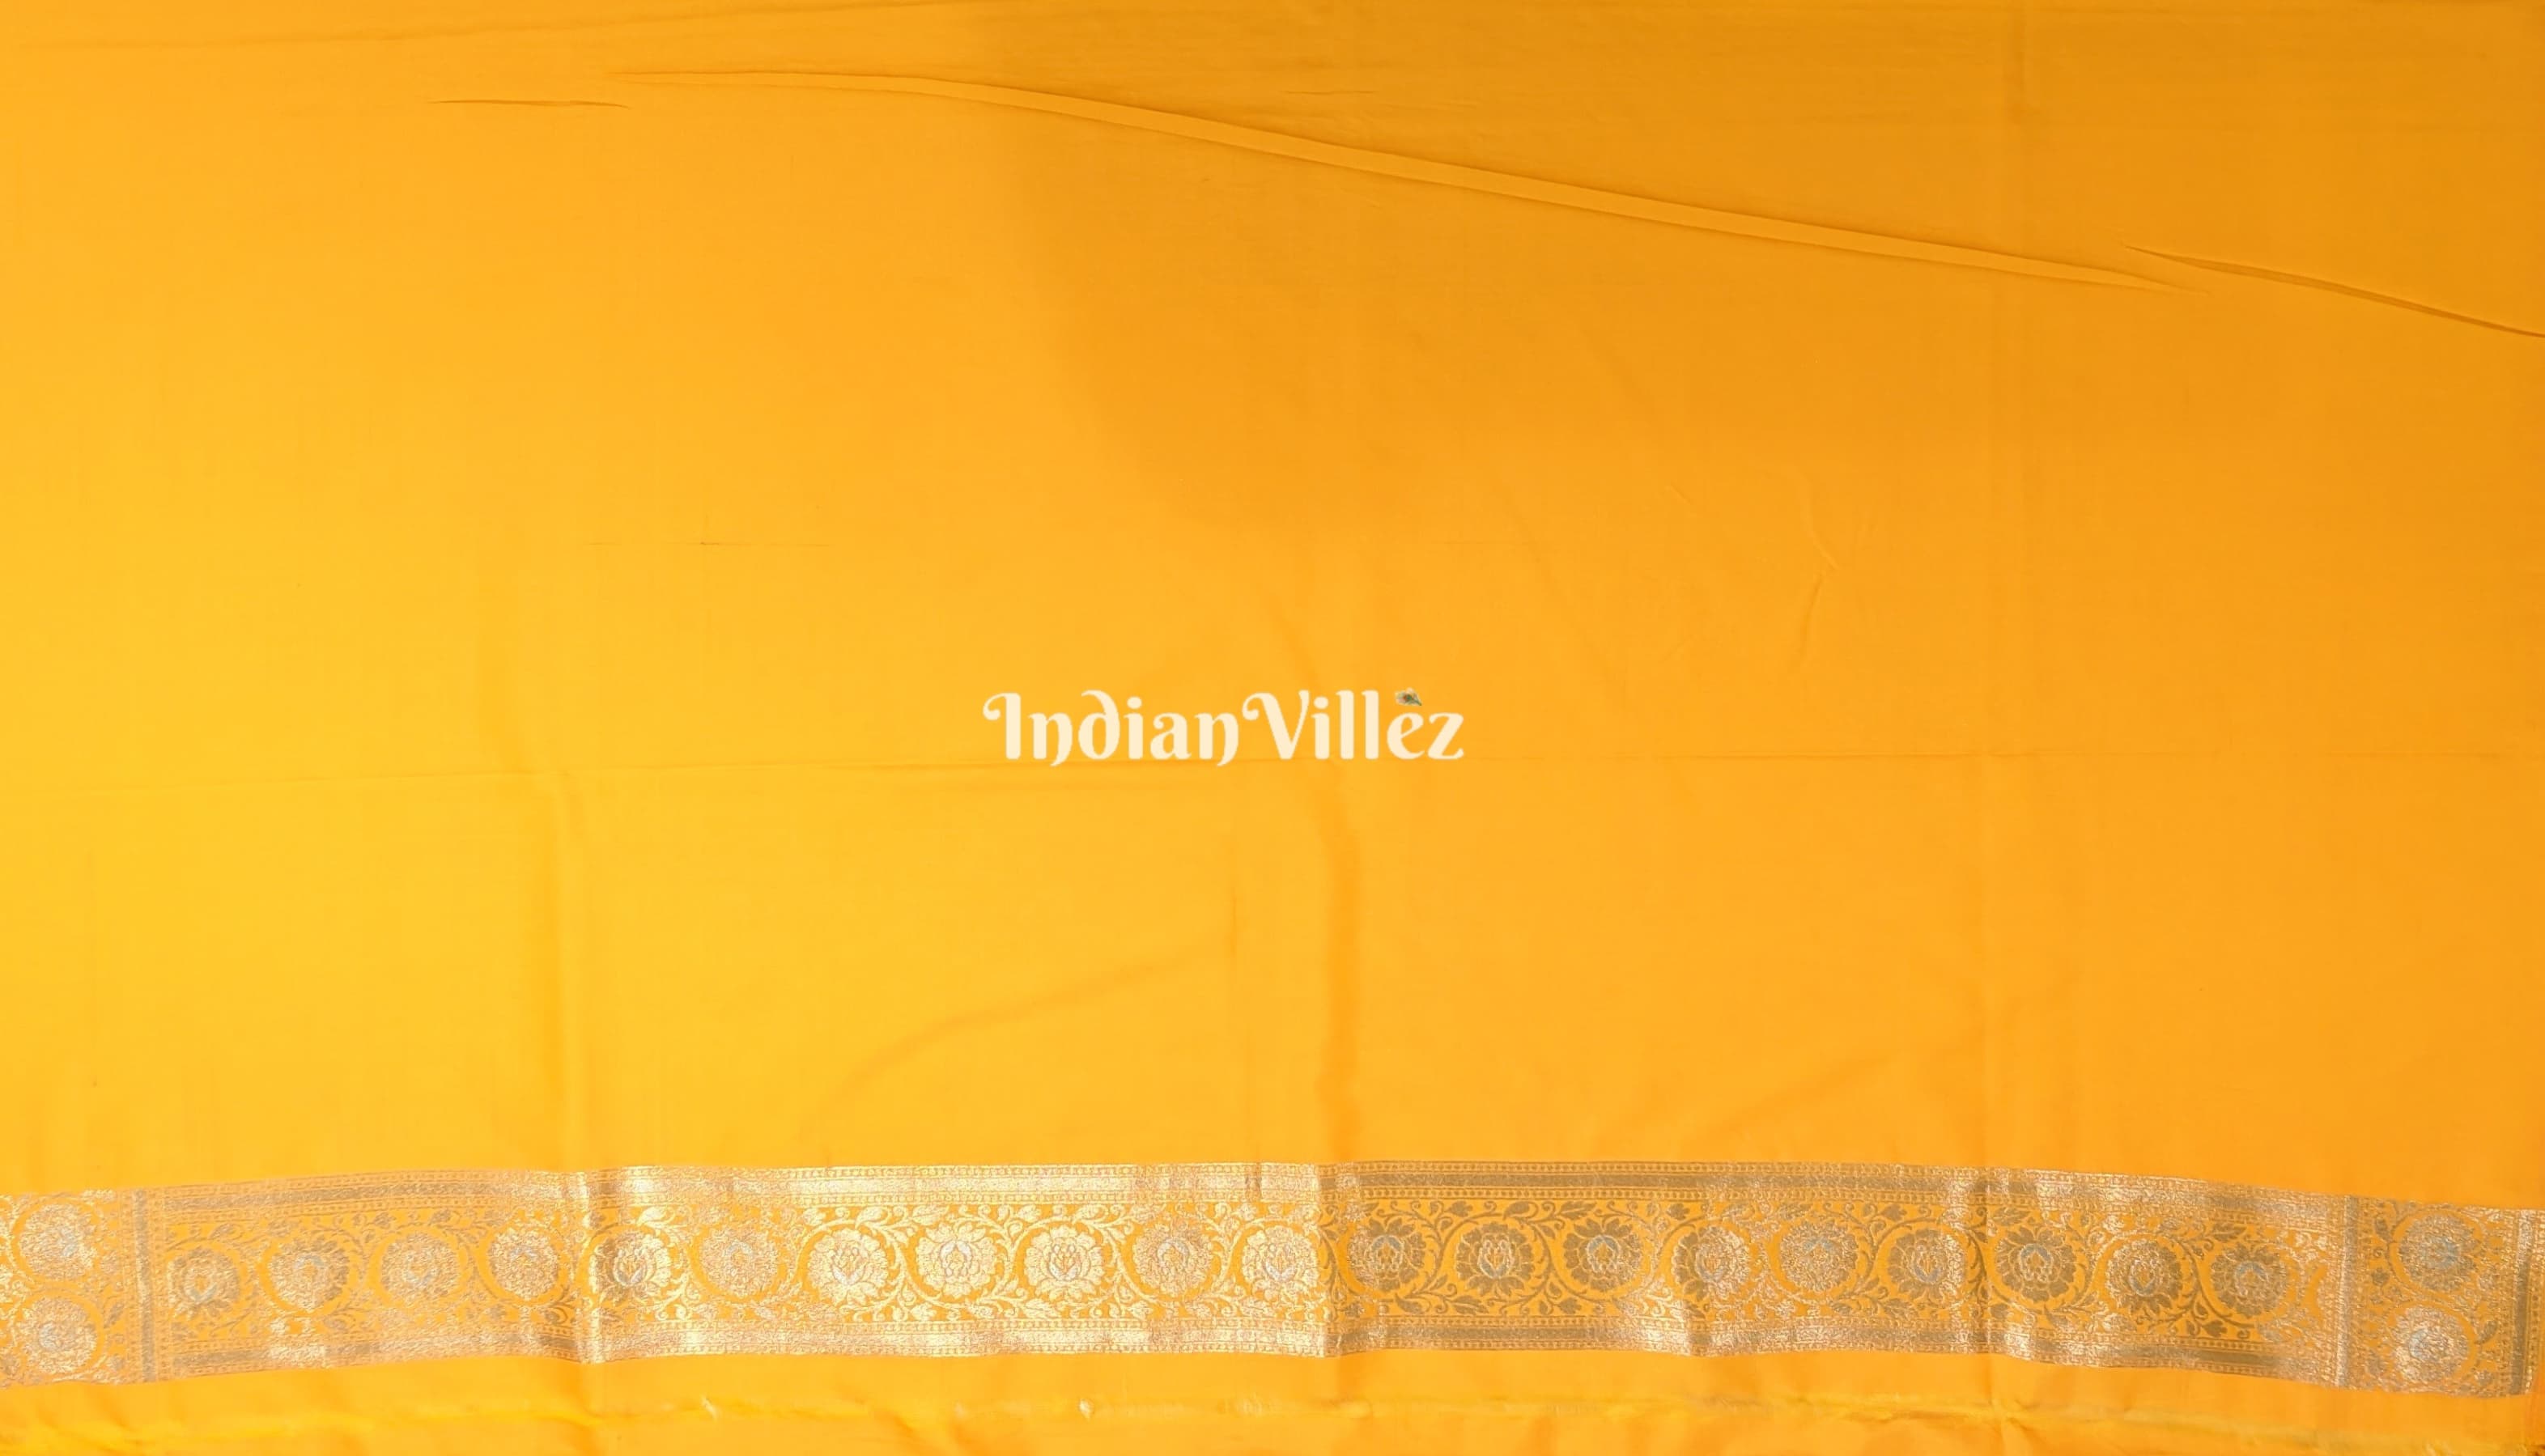 Yellow Floral Design Pure Banarasi Katan Saree